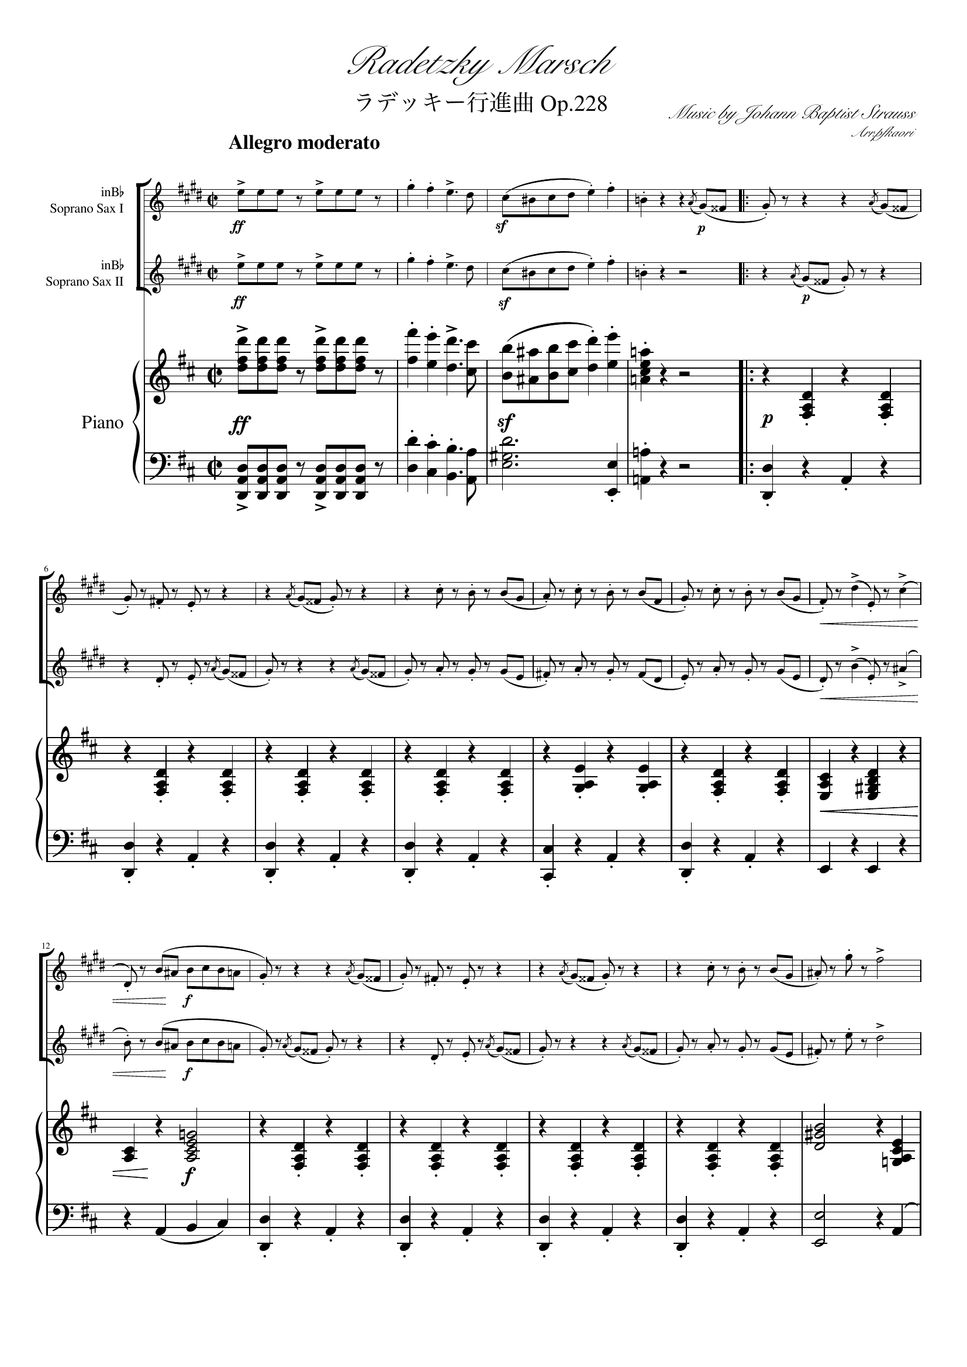 ヨハンシュトラウス1世 - ラデッキー行進曲 (D・ピアノトリオ/ソプラノサックスデュオ) by pfkaori